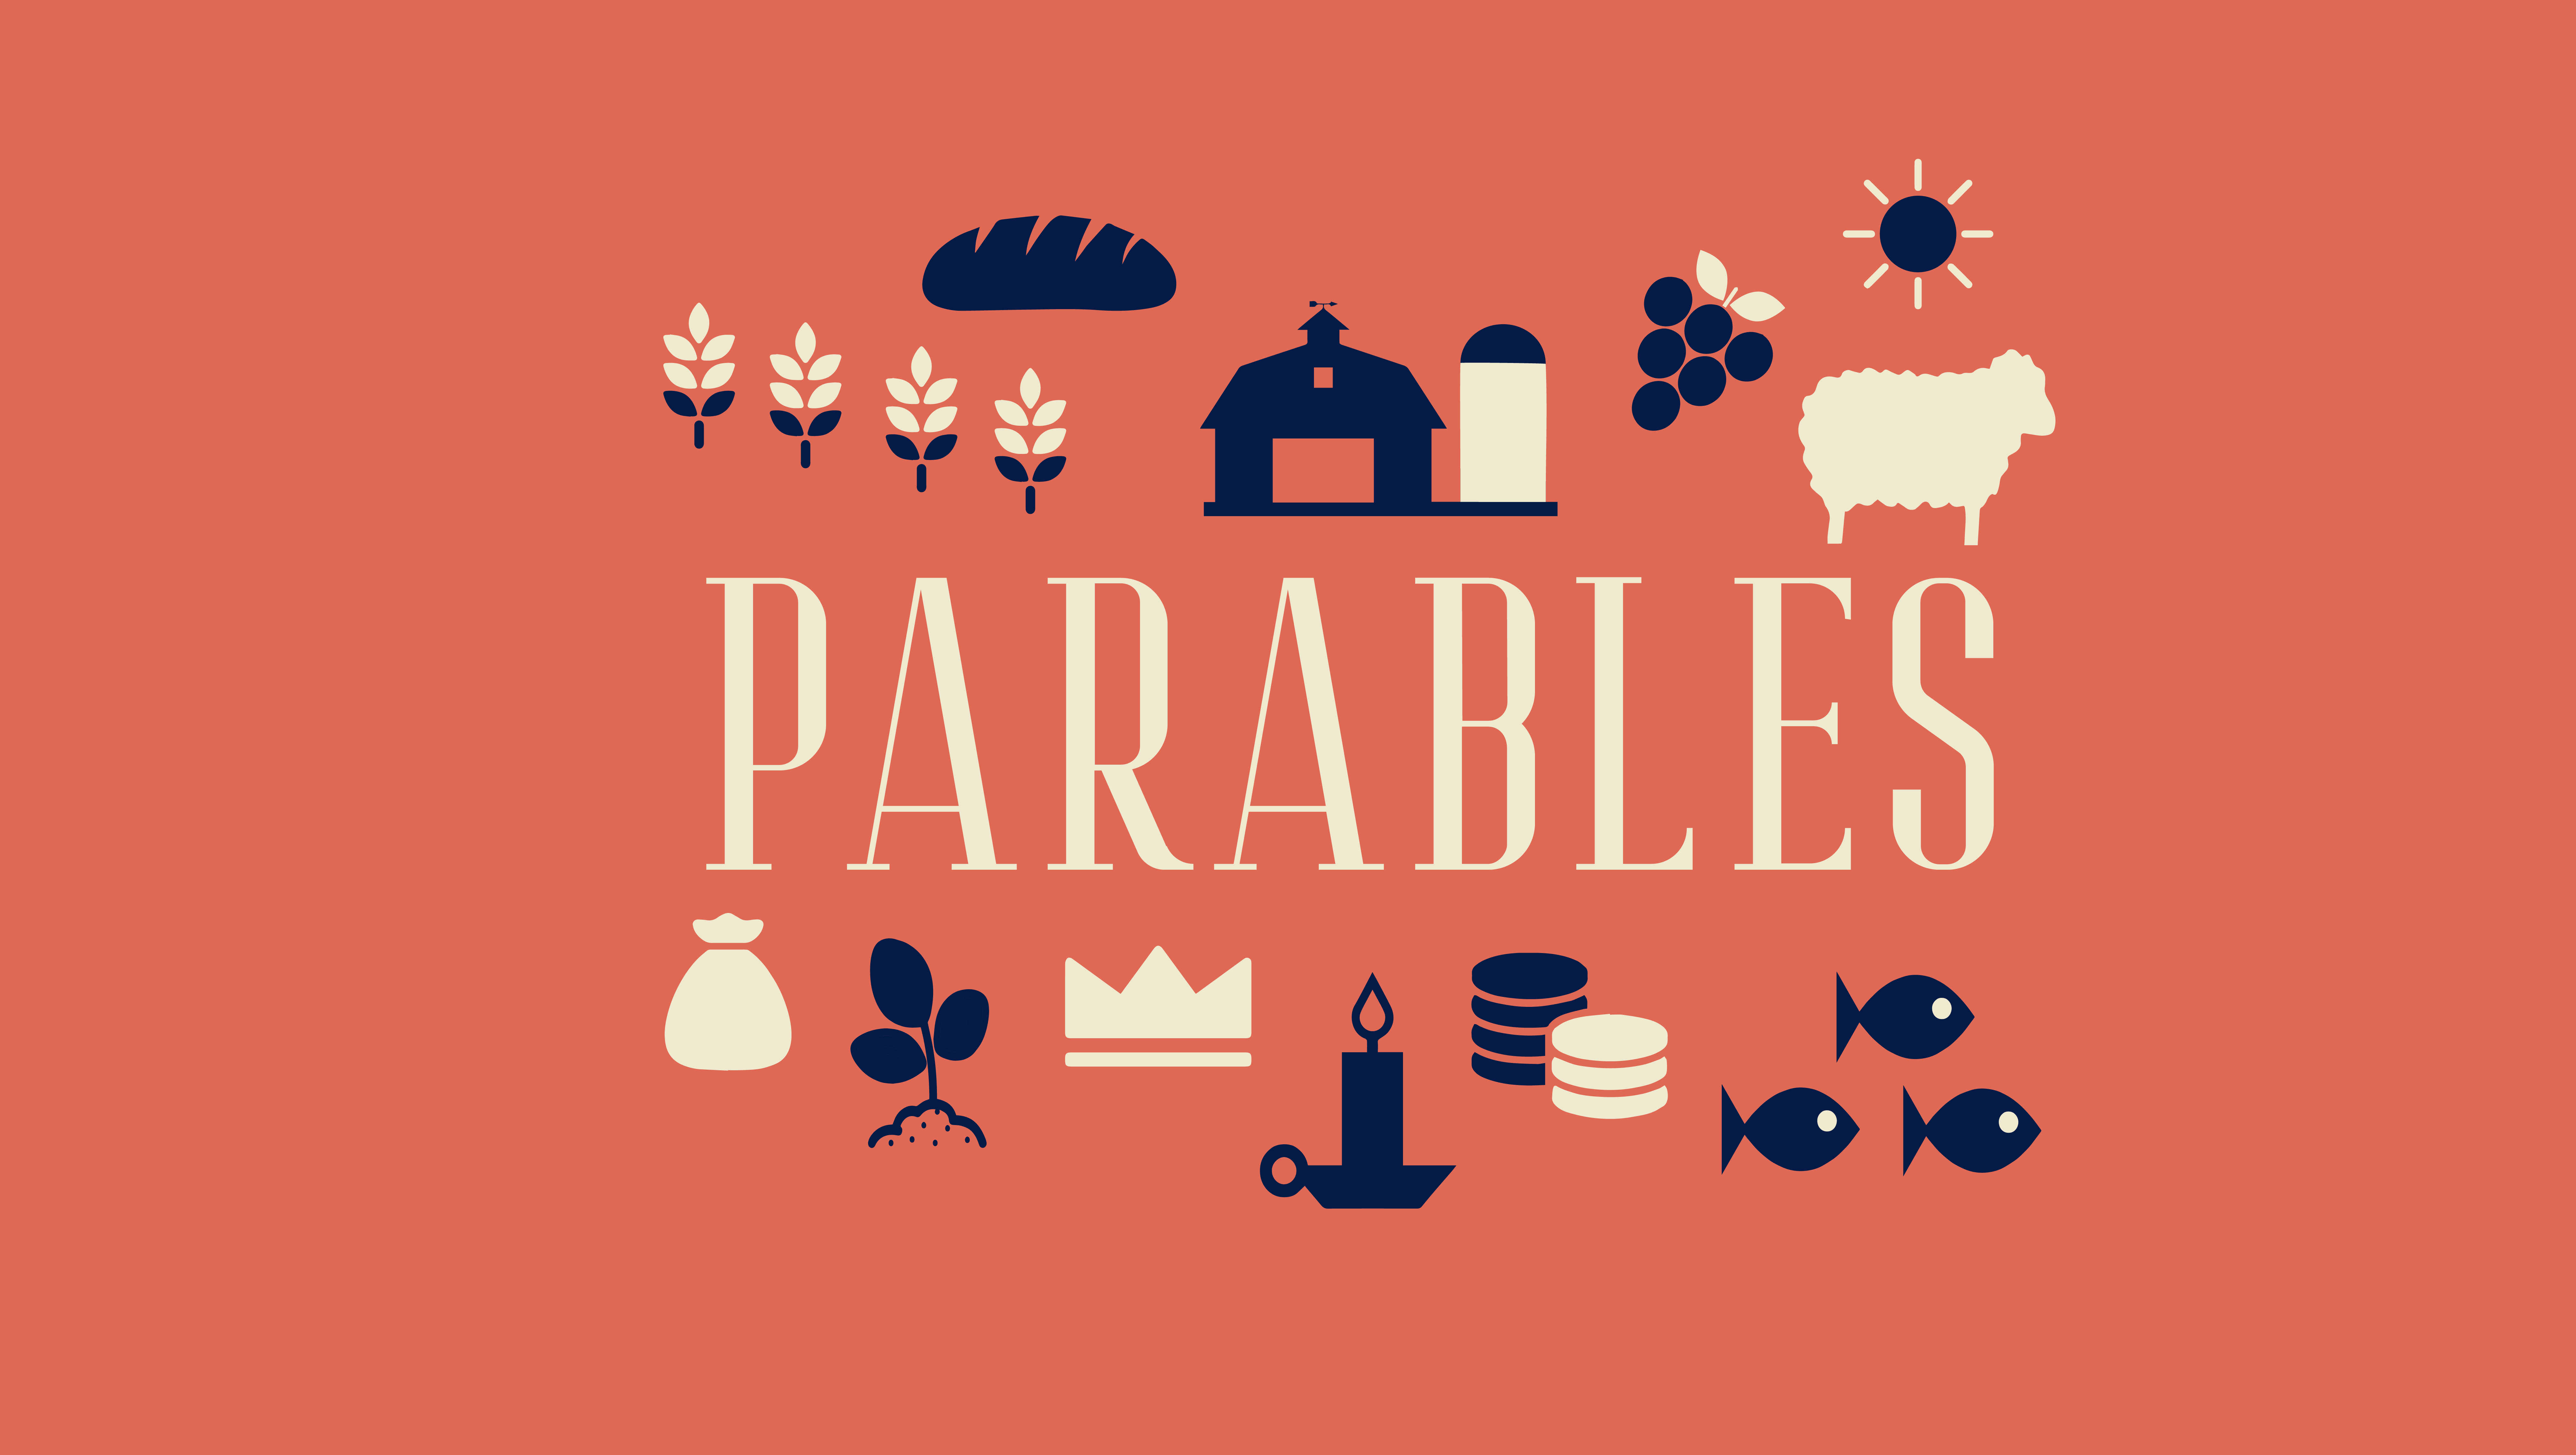 Parables-01